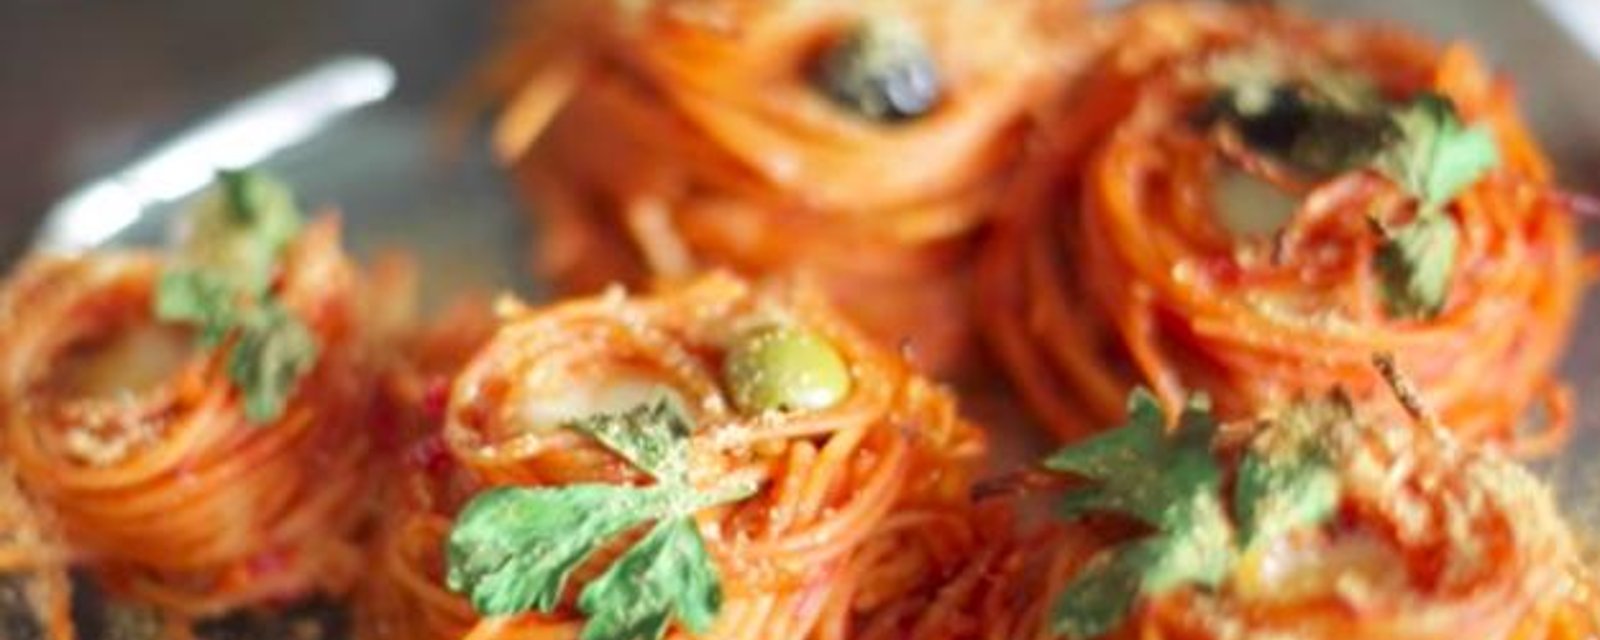 Voici une recette facile pour réinventer votre traditionnel plat de spaghetti!